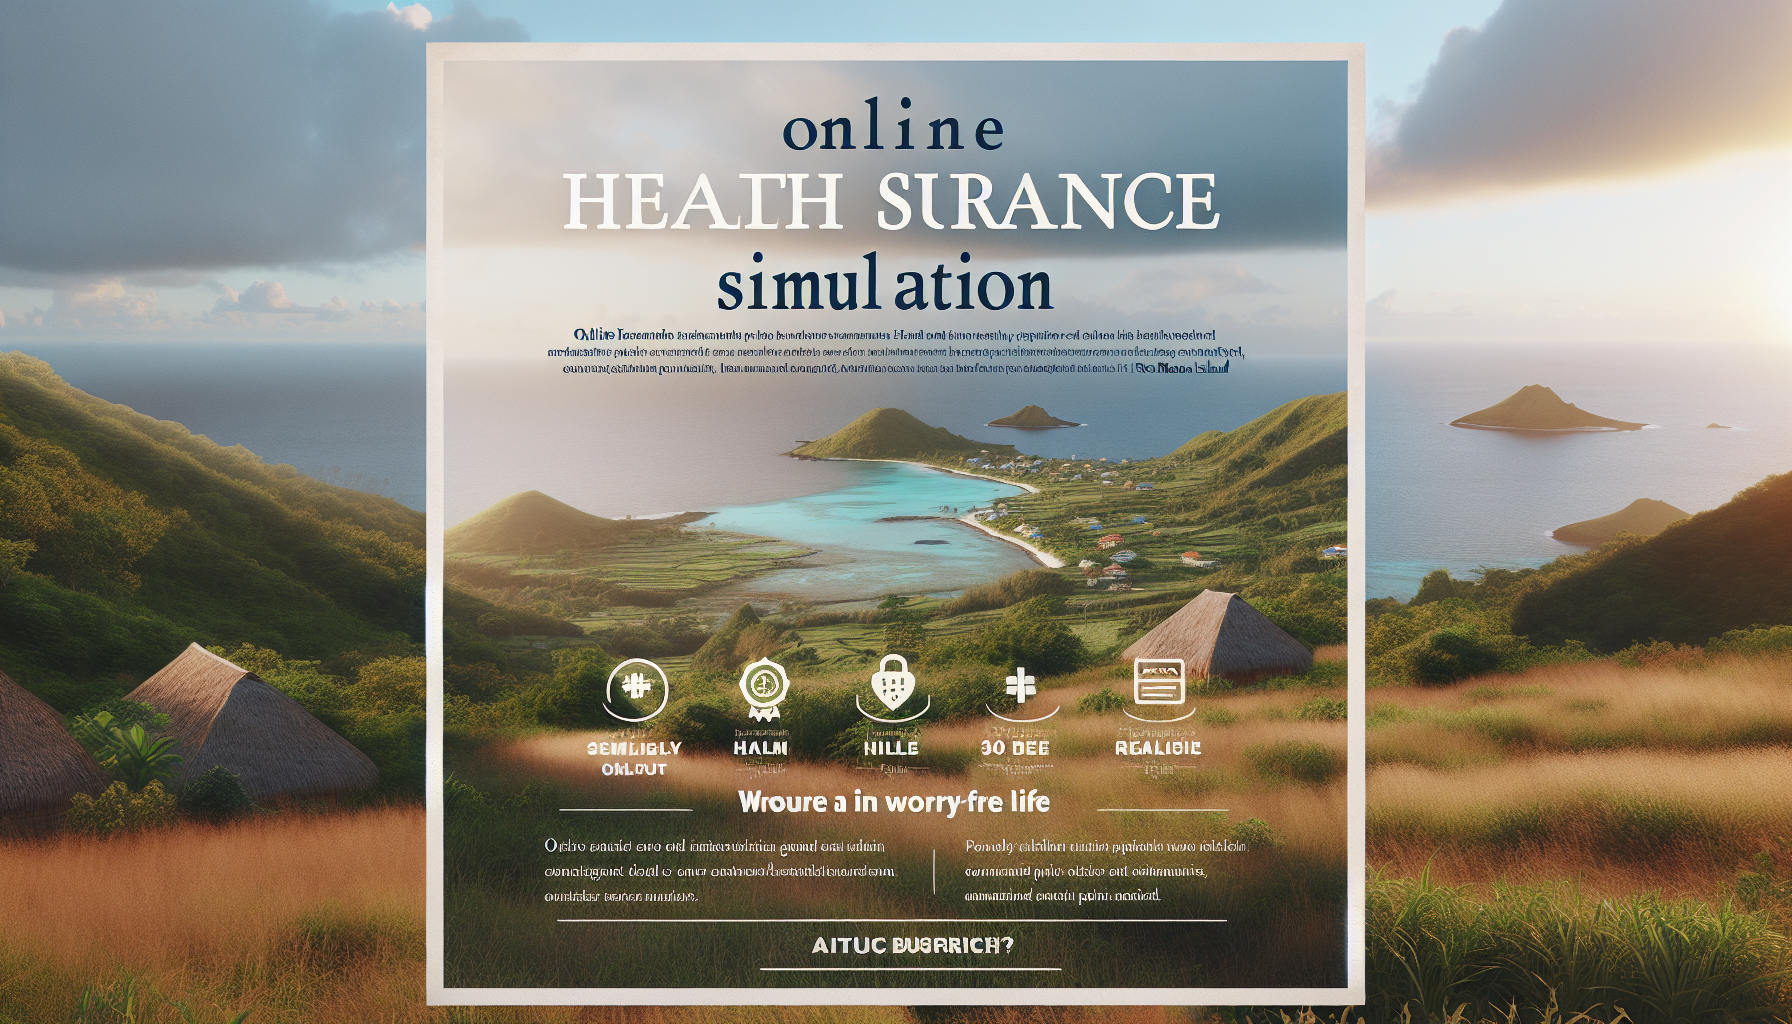 découvrez les avantages de la simulation en ligne de mutuelle santé à la réunion et choisissez la couverture idéale pour vos besoins avec facilité et rapidité.